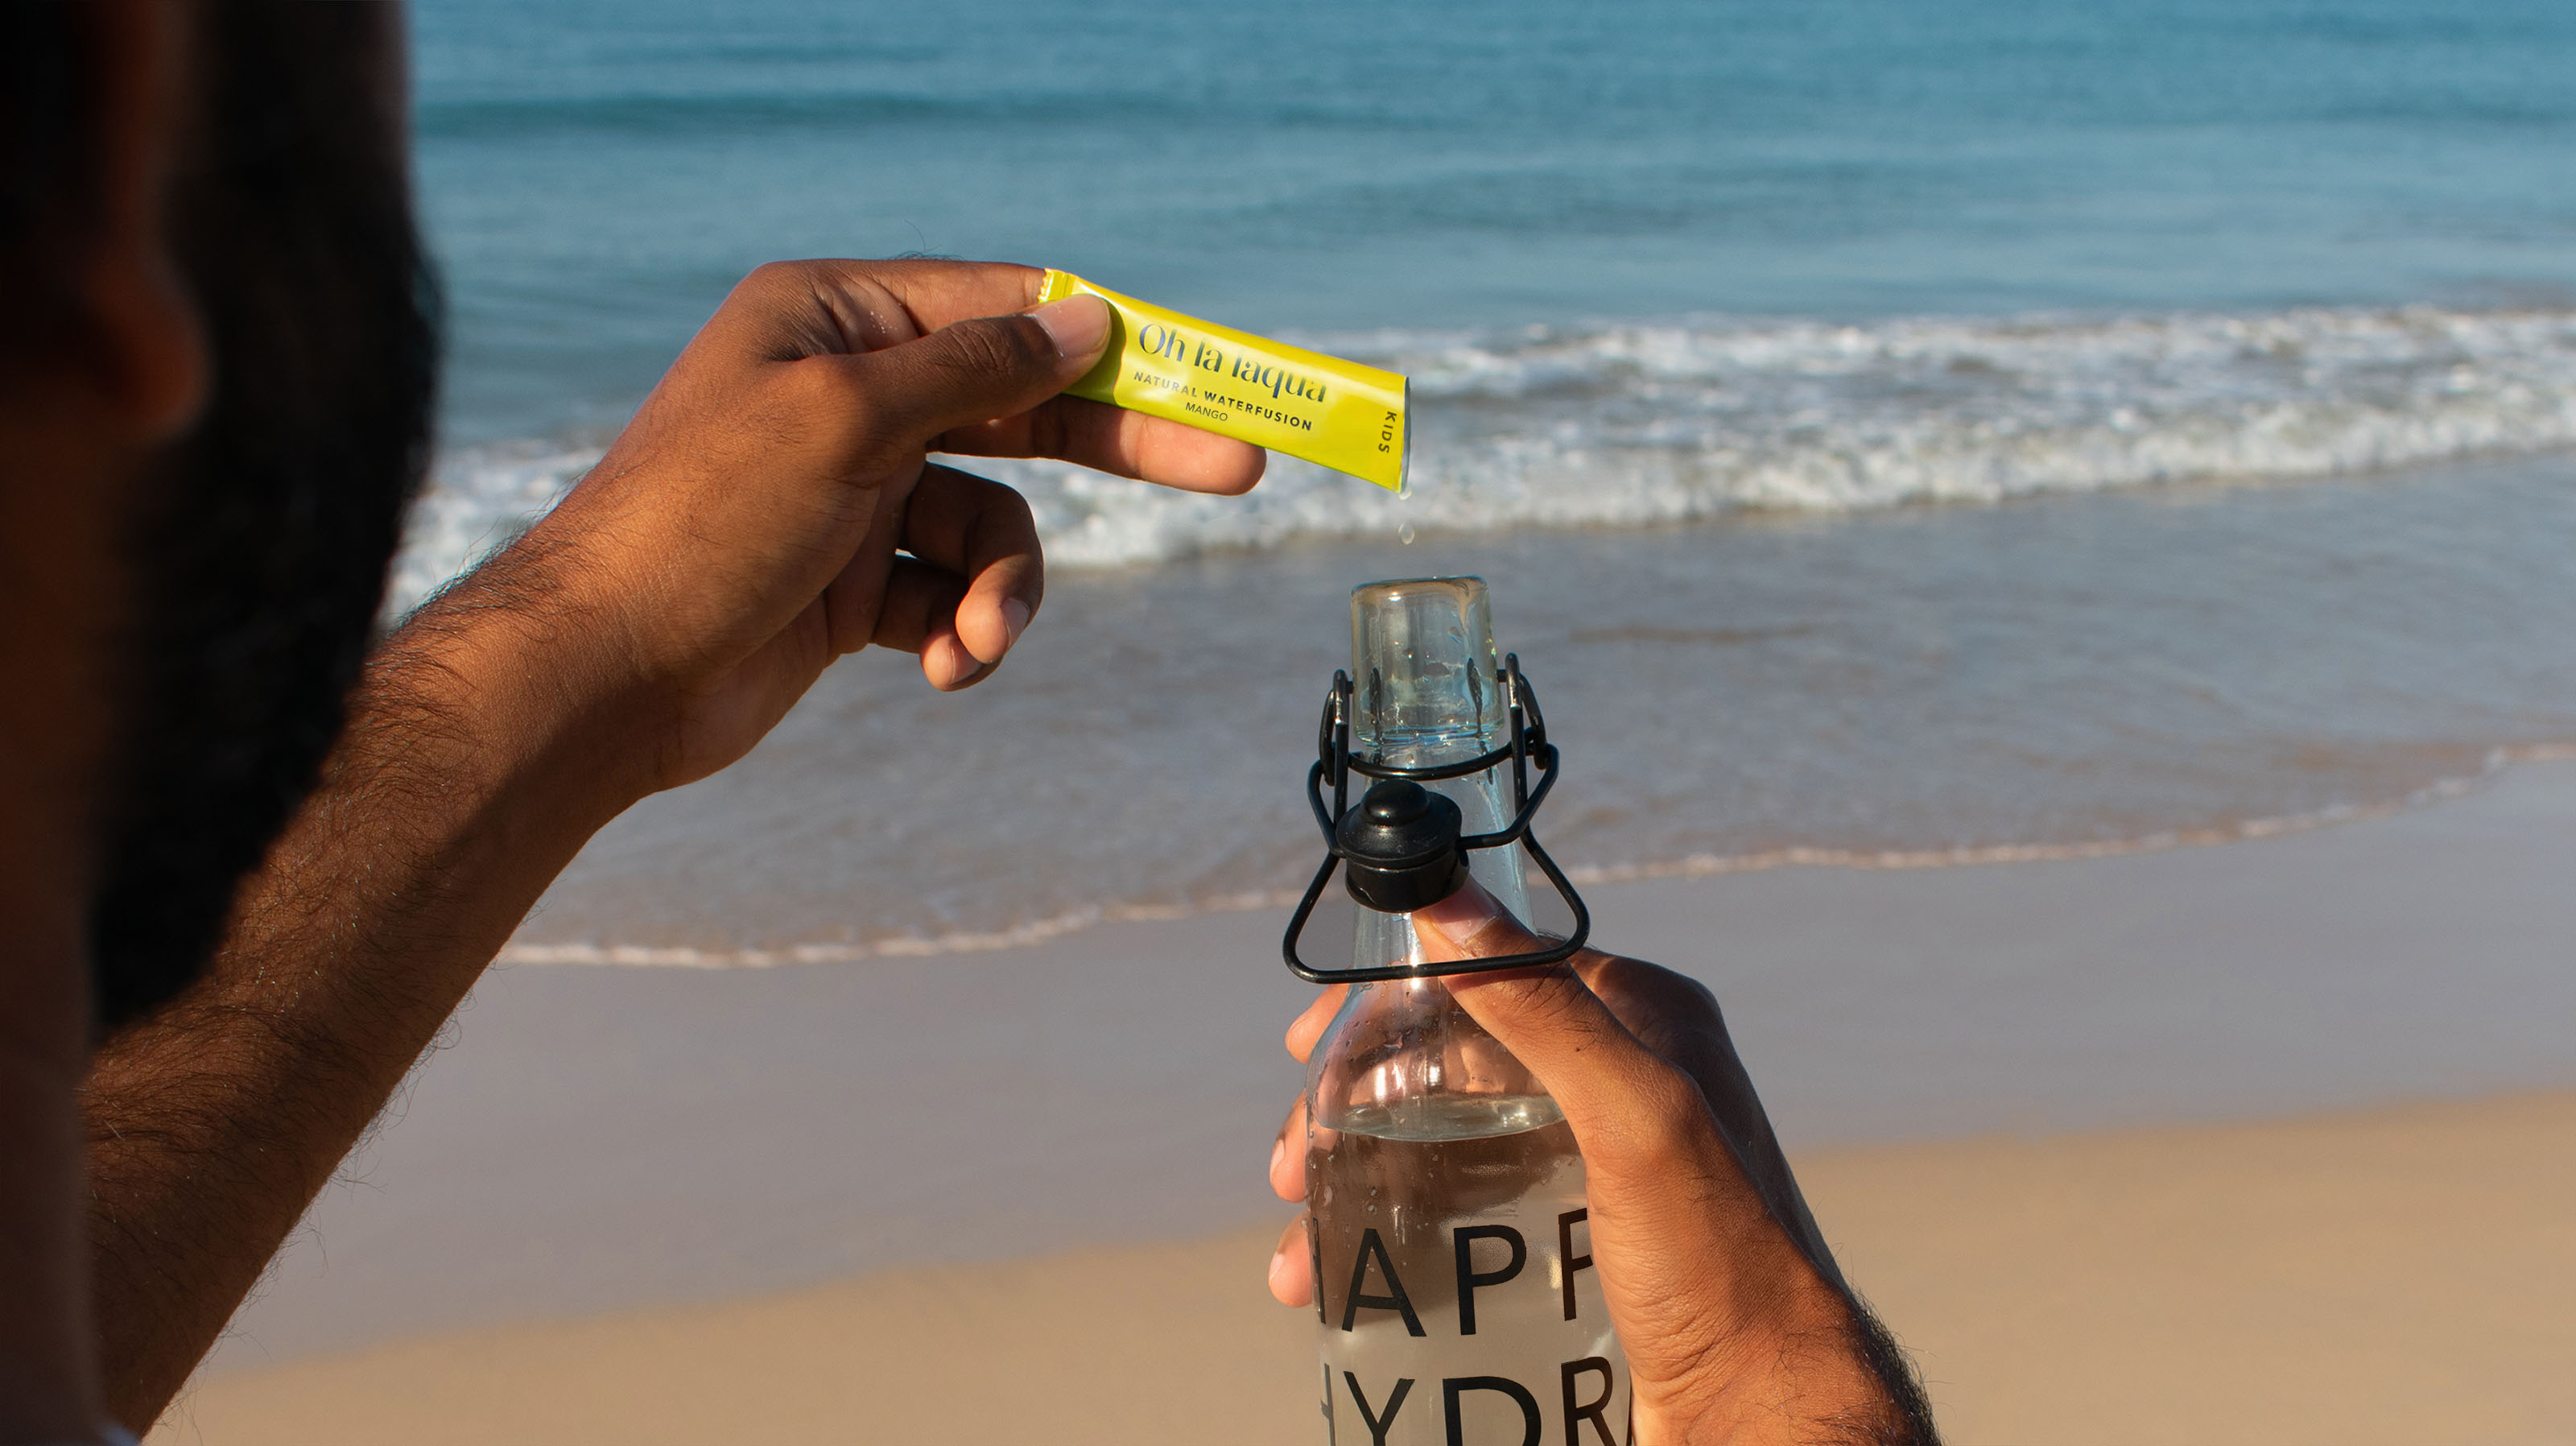 OHLALAQUA wird in eine Wasserflasche gegeben. Im Hintergrund ist ein Strand zu sehen.